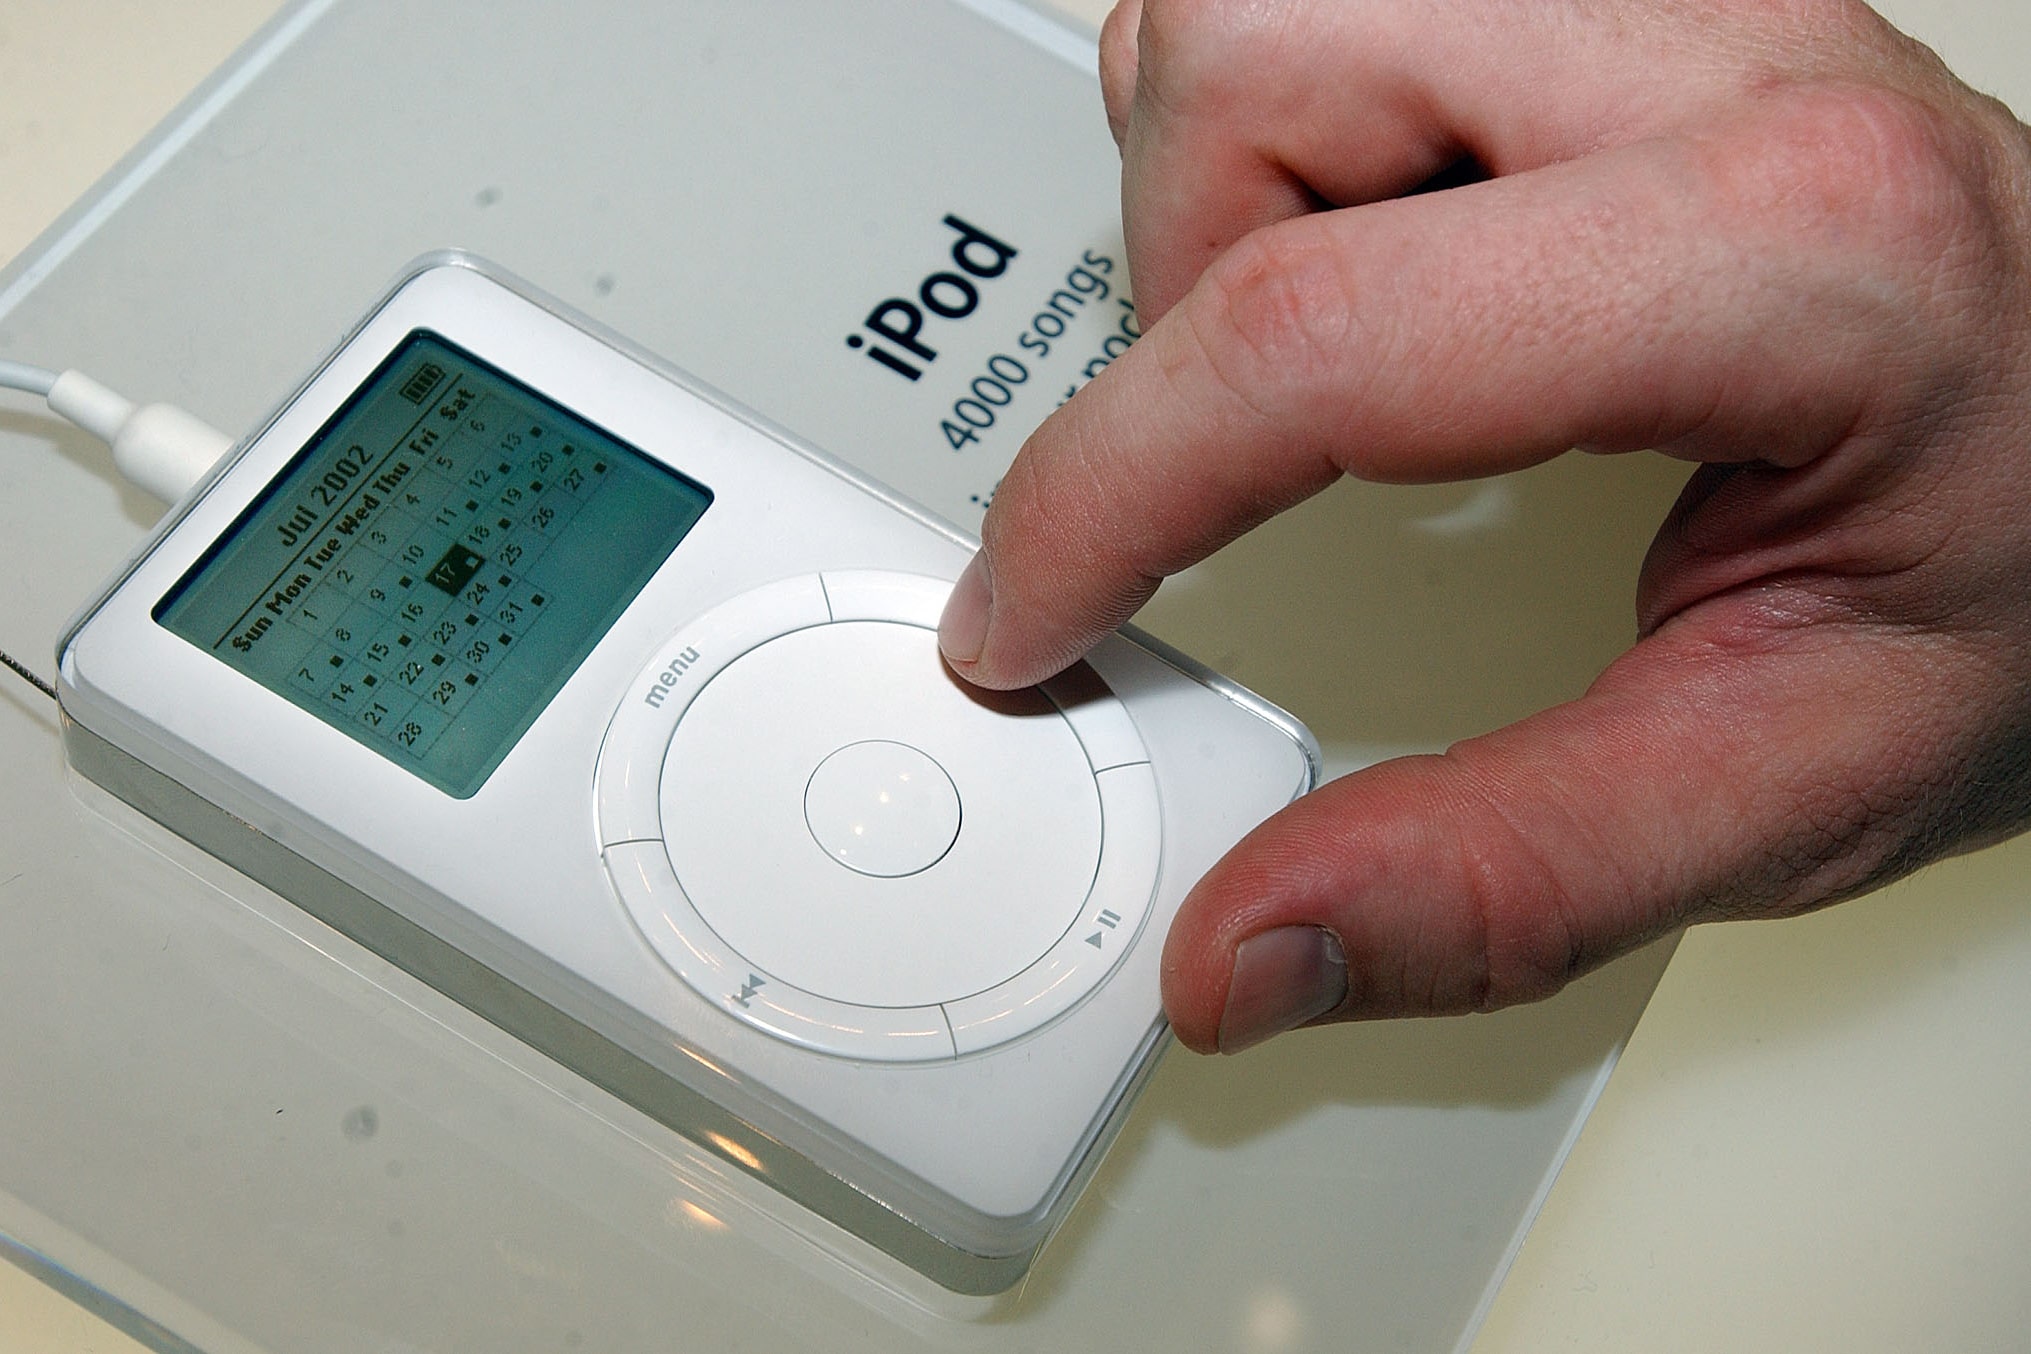 iPod em exposição